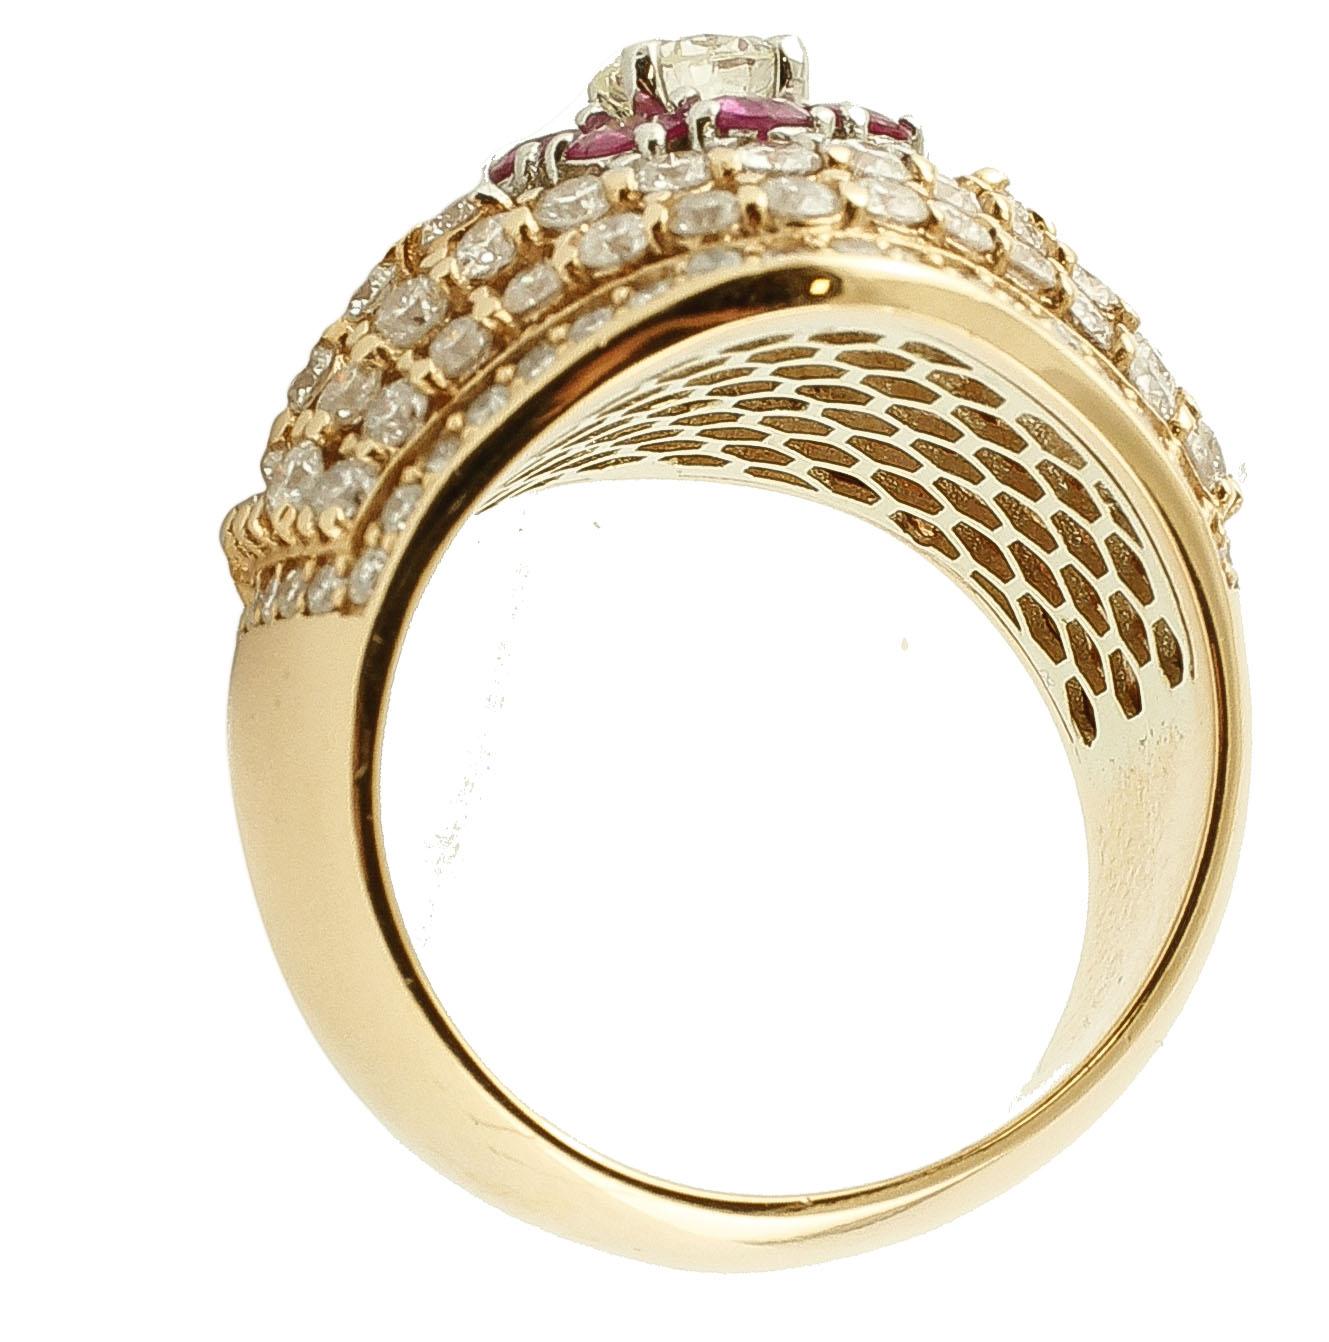 Round Cut Diamonds, Rubies, 18 Karat Rose Gold Cluster Ring